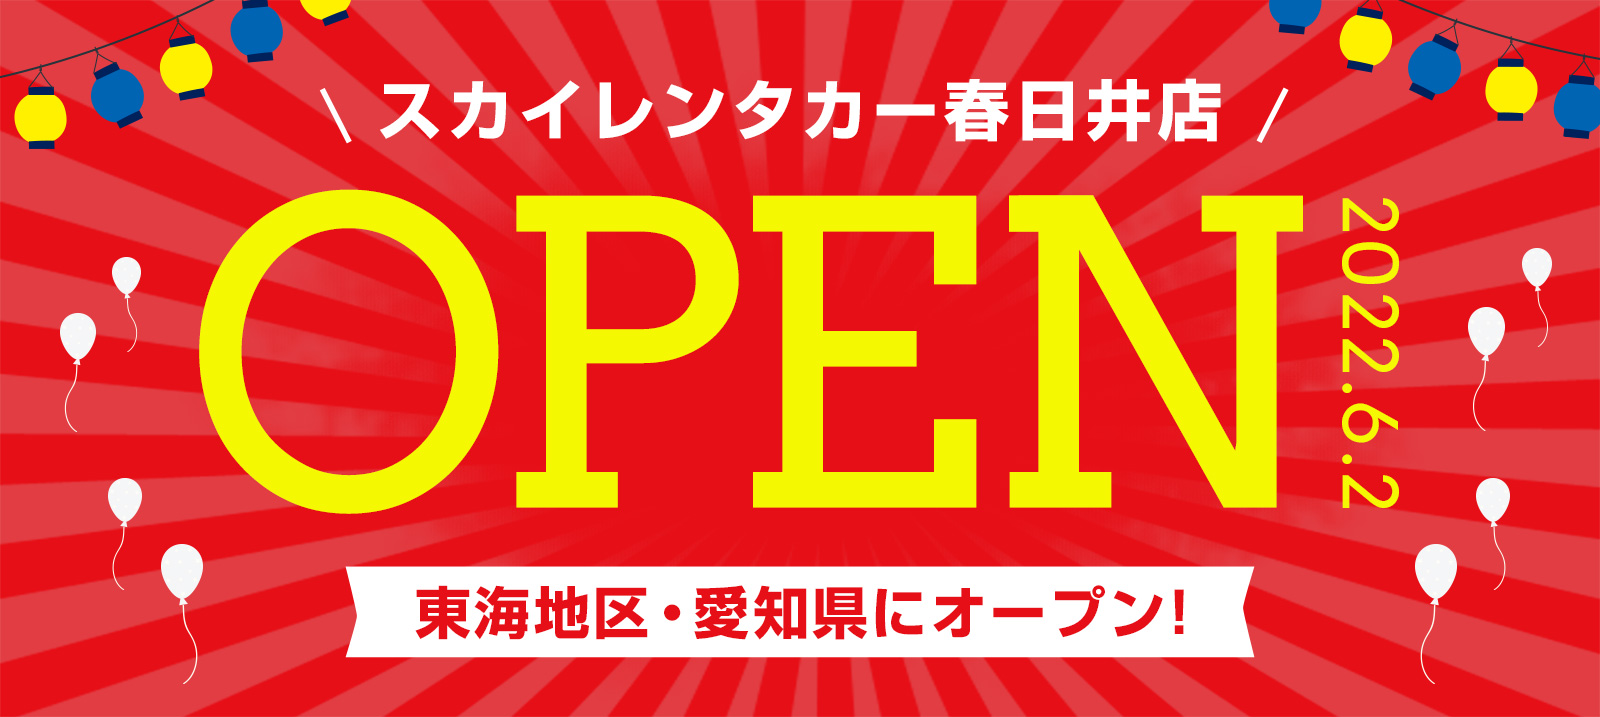 【東海地区】2022年6月2日に春日井店オープン！